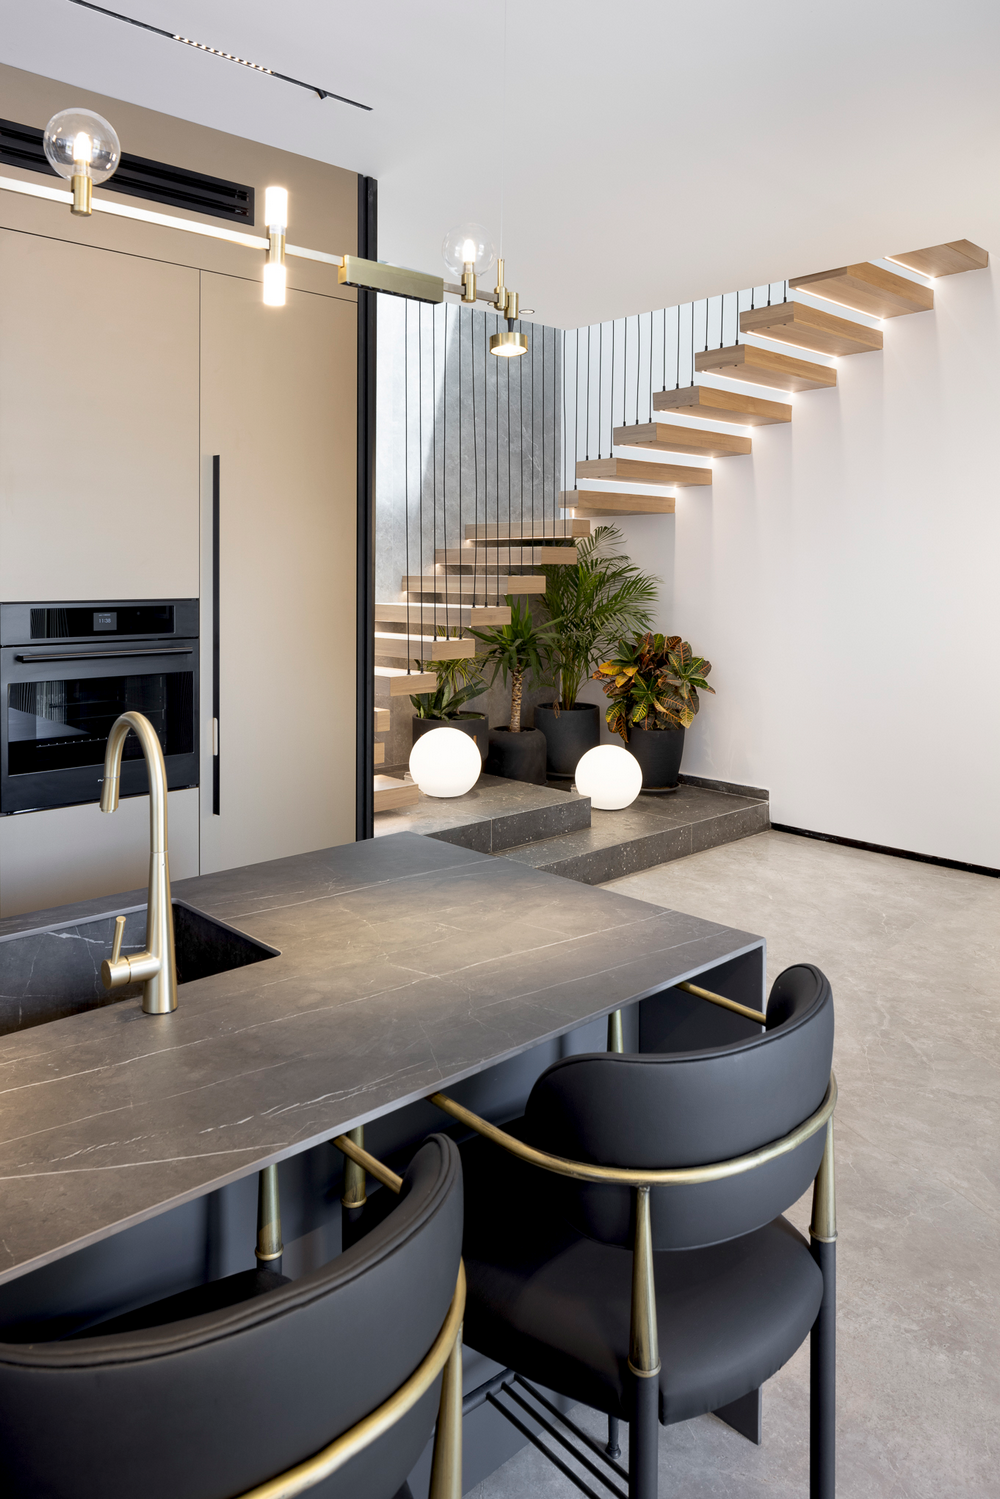 עיצוב הבית: דו-קומתי עם אלמנט בשילוב מדרגות ומעקות